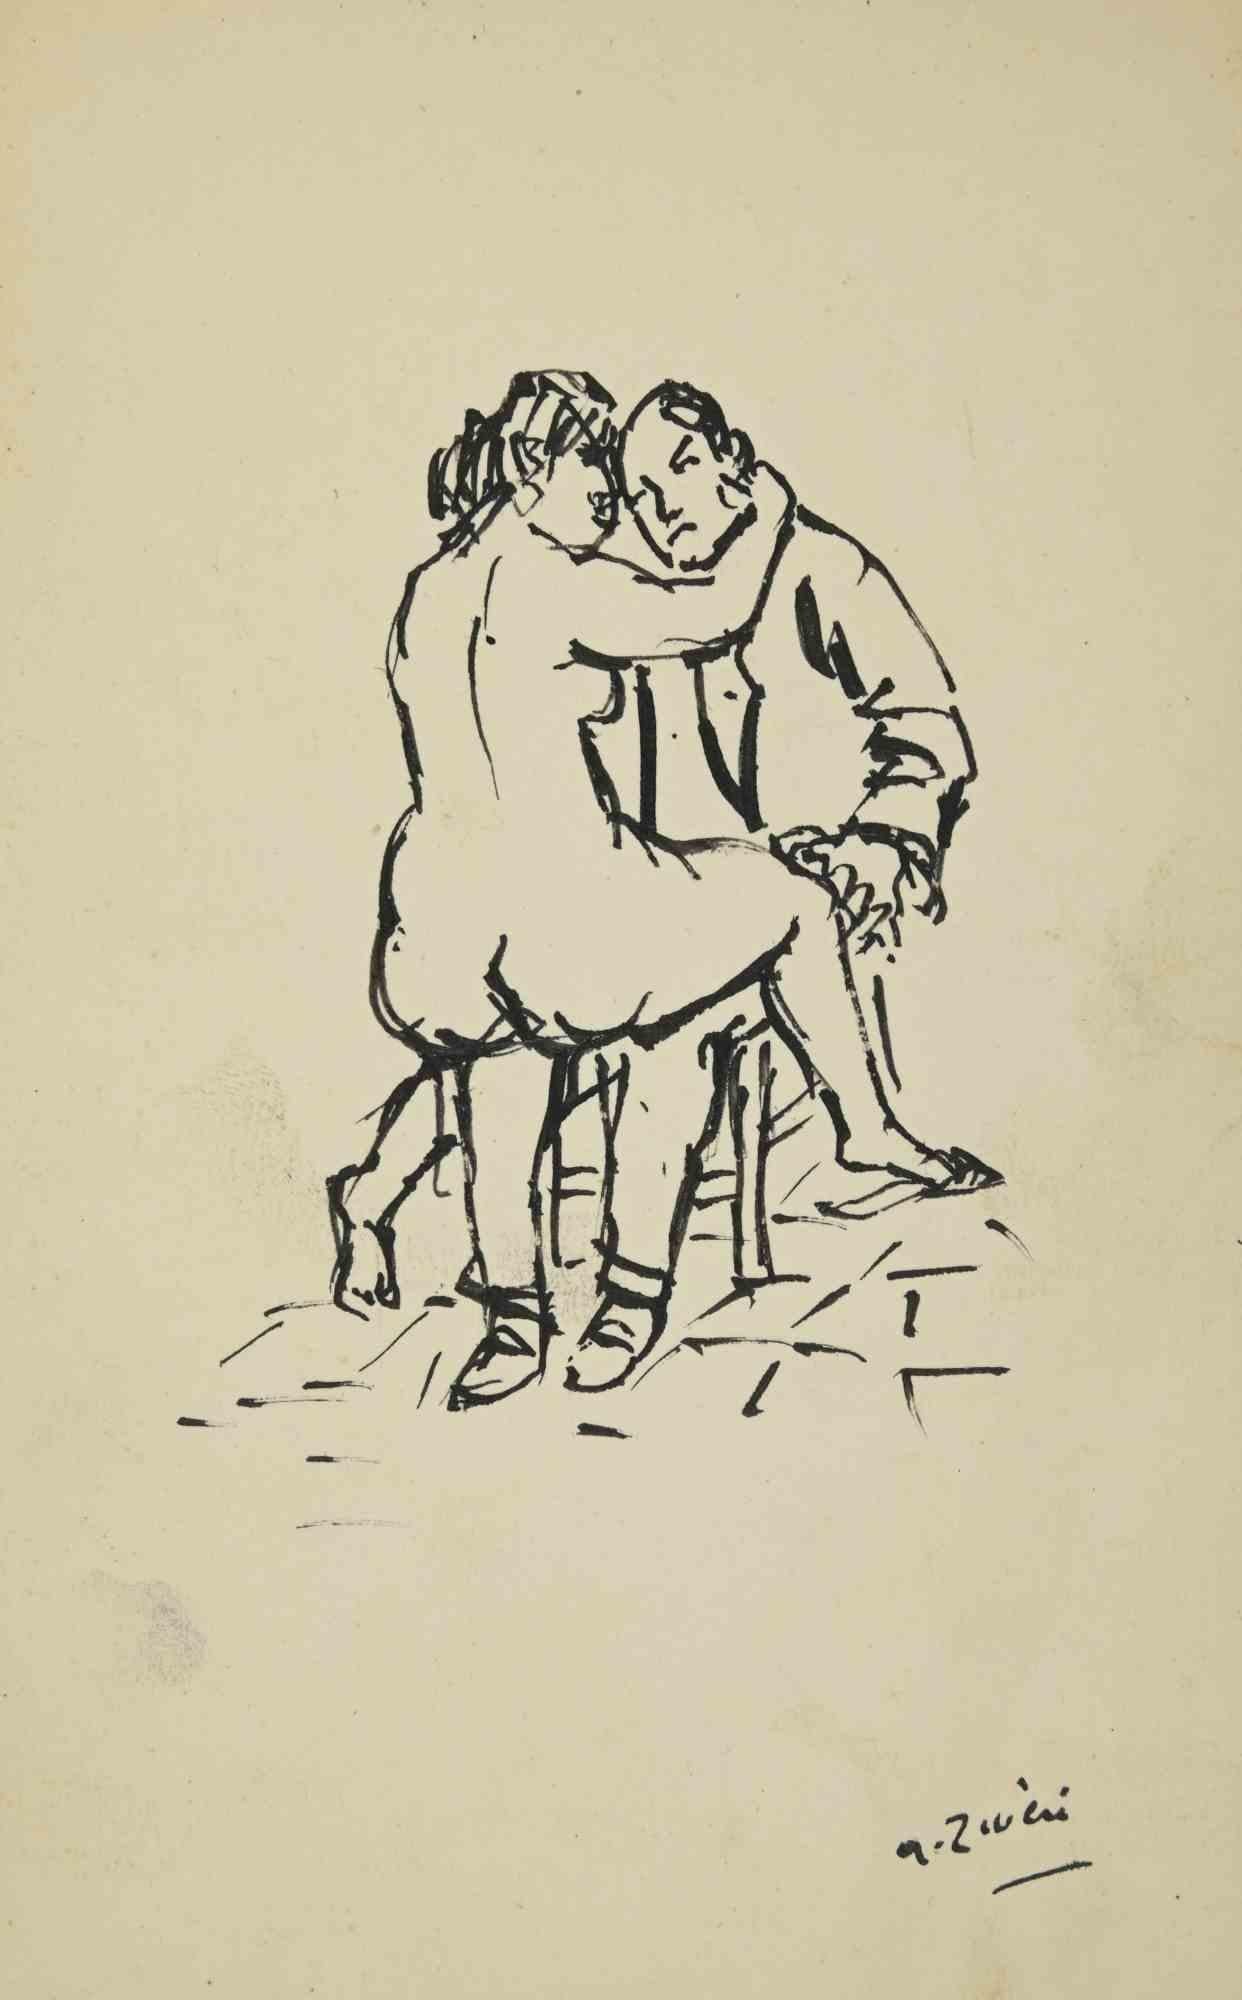 Erotic Scene ist eine Zeichnung von Alberto Ziveri aus den 1930er Jahren

Tinte auf Papier

Handsigniert.

In gutem Zustand. 

Das Kunstwerk wird durch geschickte Striche meisterhaft dargestellt.

Alberto Ziveri (Rom, 1908 - 1990), der italienische